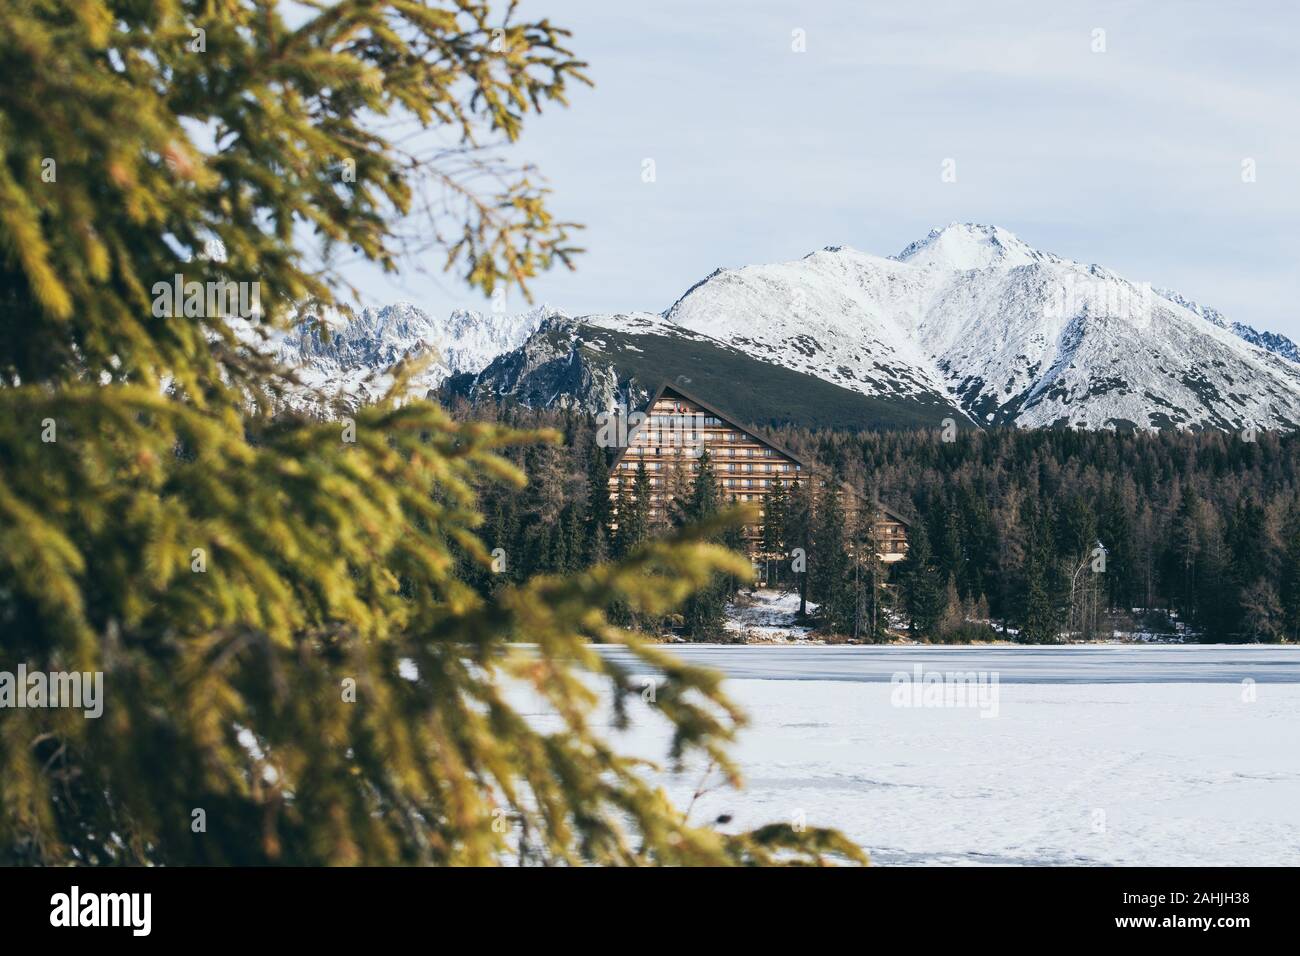 Strbske Pleso, Slovaquie - Décembre 2019 : vue sur l'hôtel Patria et hautes montagnes Tatras au-dessus du lac gelé. Banque D'Images